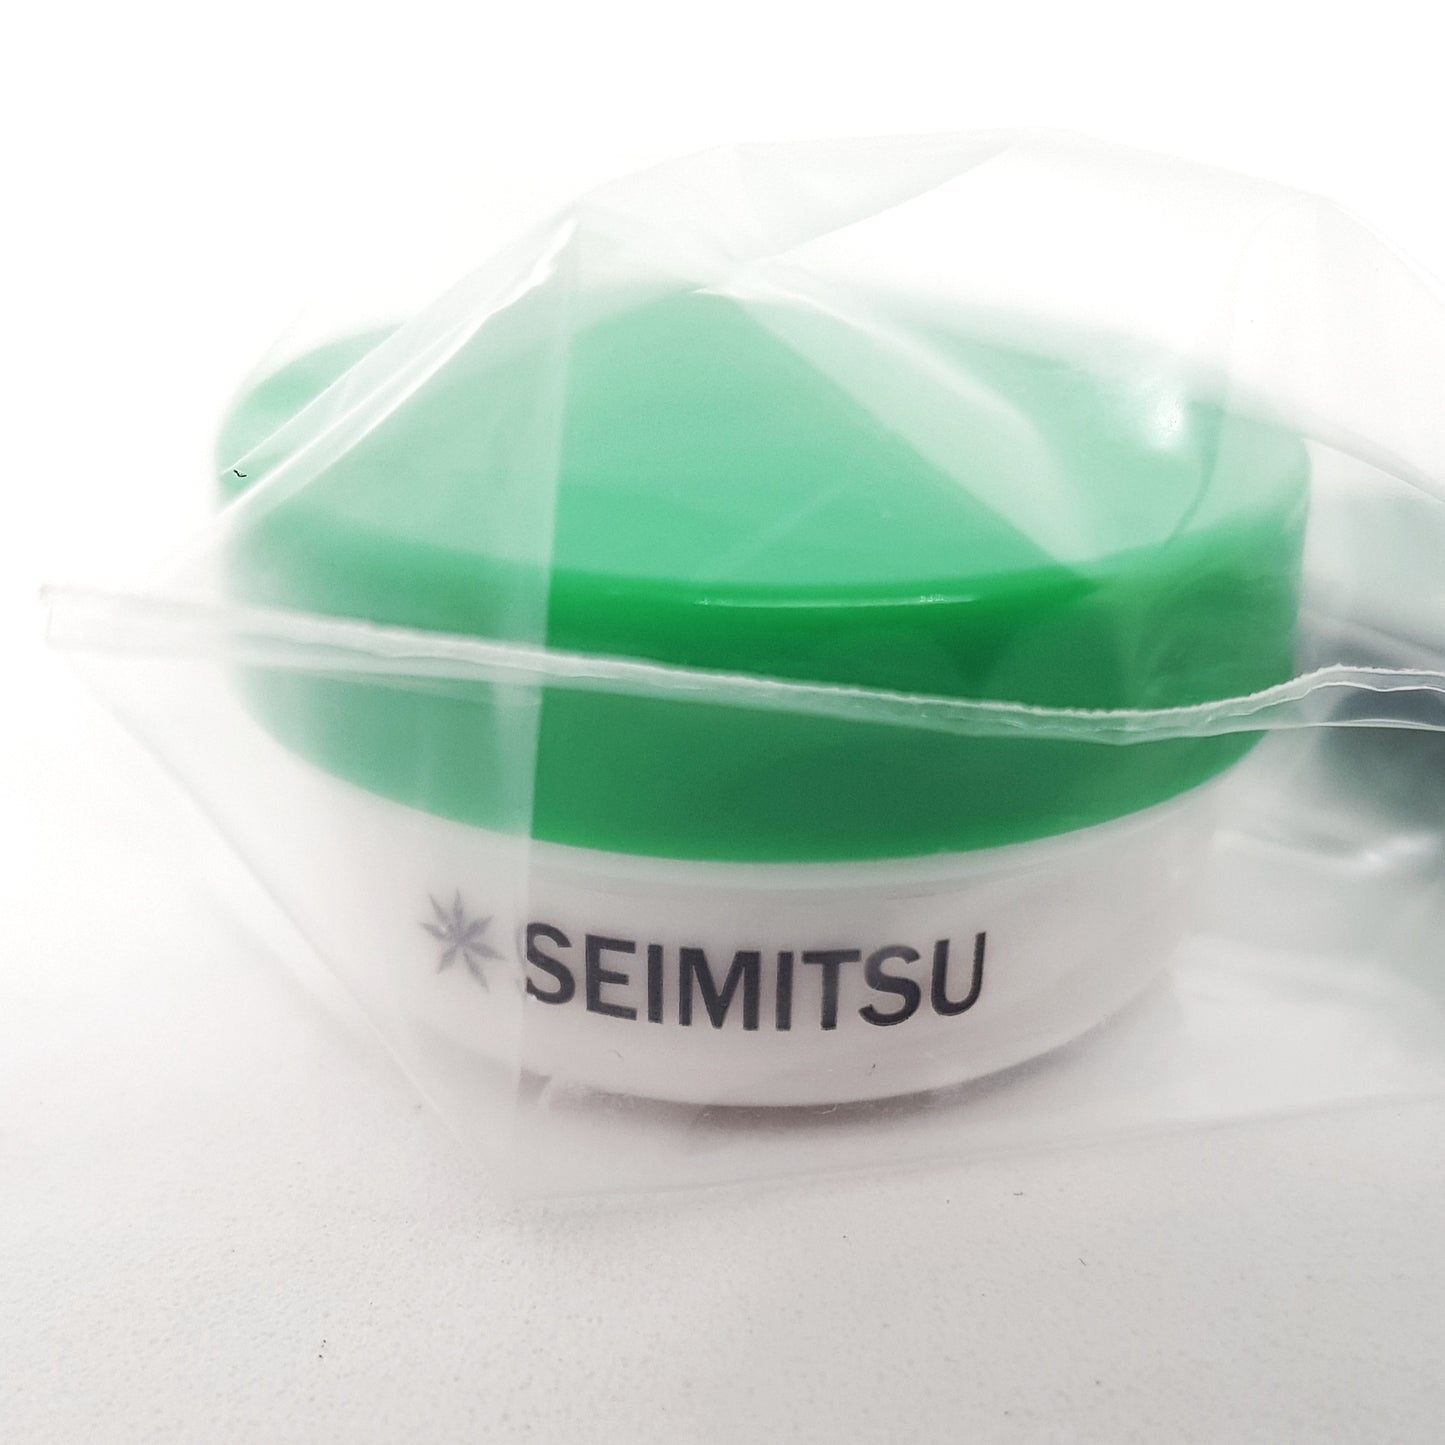 ShinEtsu+Seimitsu G501 Silicone grease (10g container) for Seimitsu joysticks